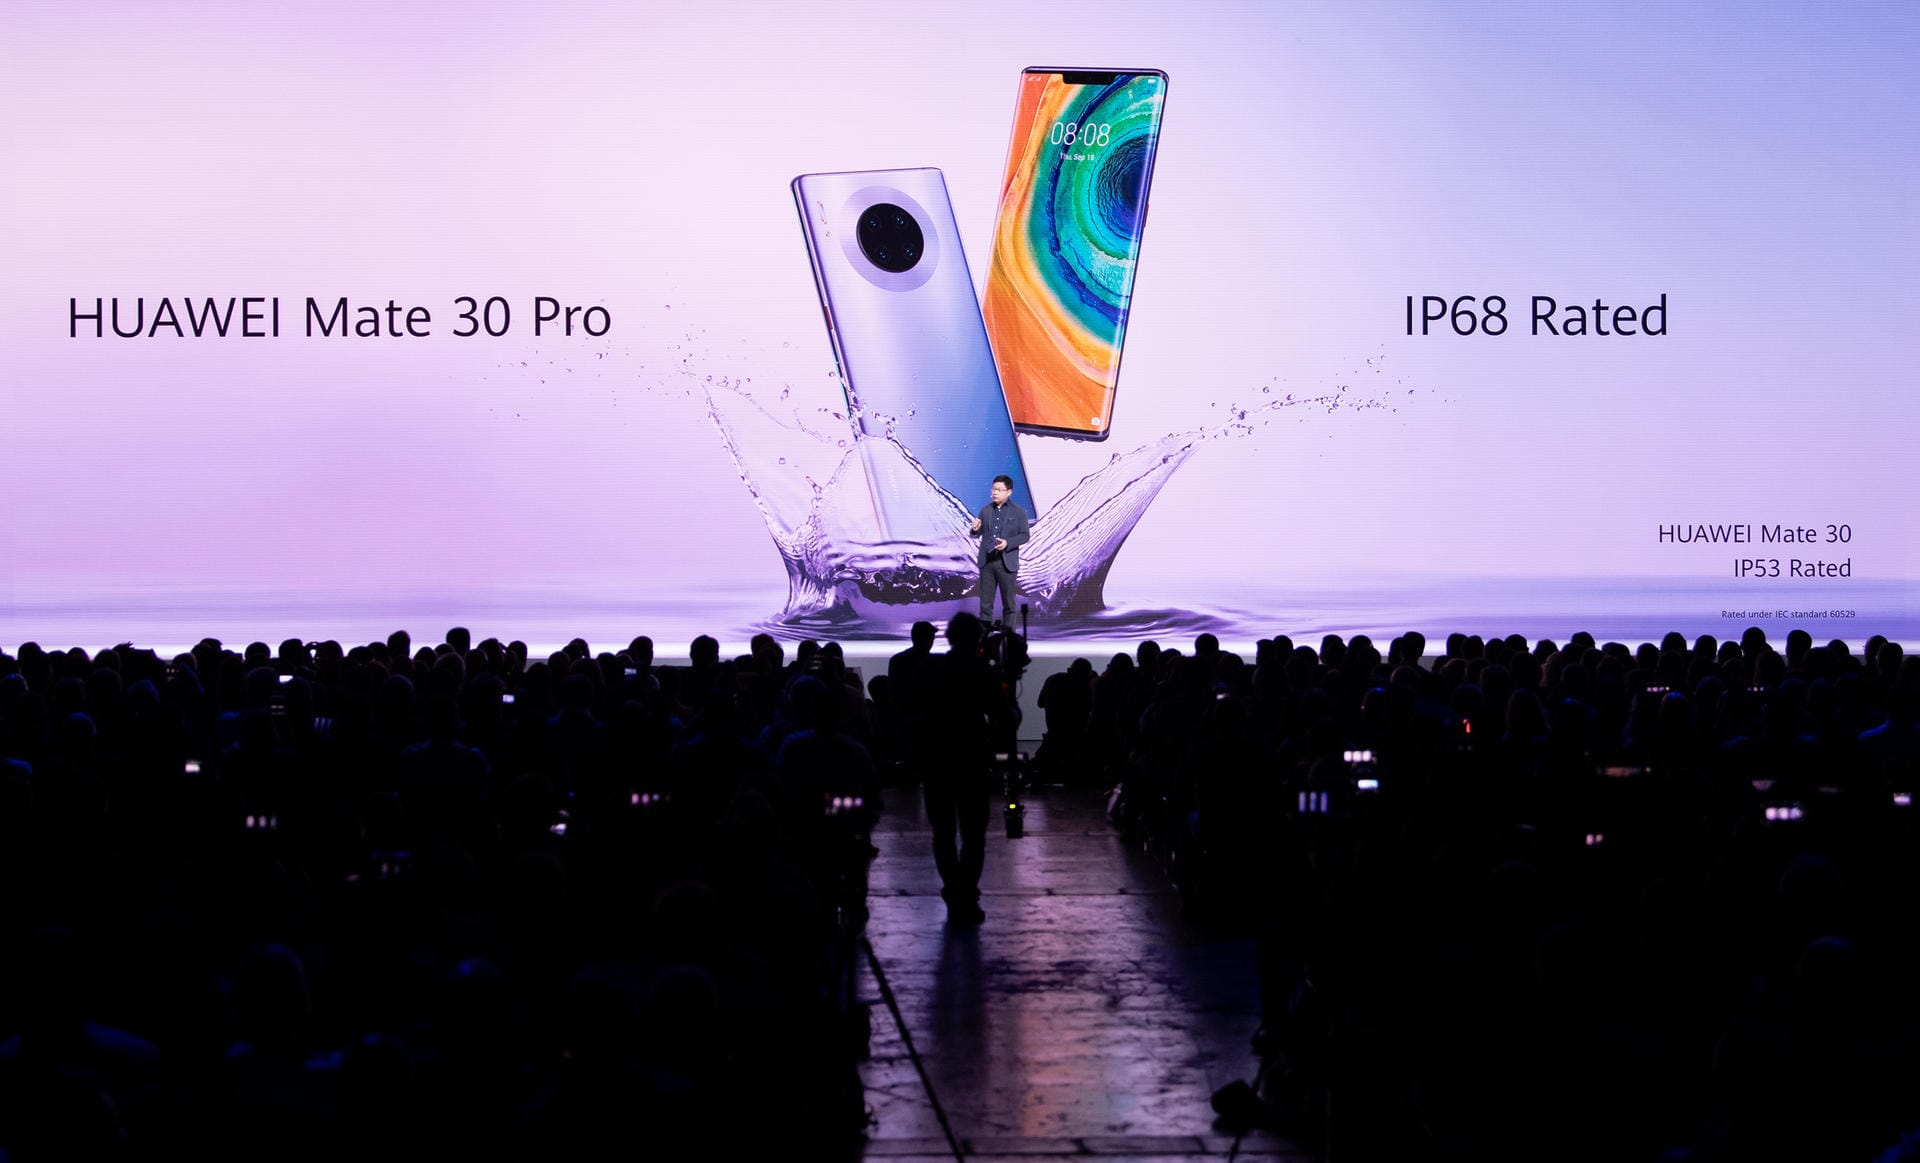 Bei den Geräten handelt es sich um 5G-Smartphones, die mit dem neuen Huawei-Chip Kirin 990 5G angetrieben werden. Das Mate30 Pro soll zudem mit 14 Antennen ausgestattet sein. Damit sollen höhere Surfgeschwindigkeiten ohne Unterbrechung möglich sein.